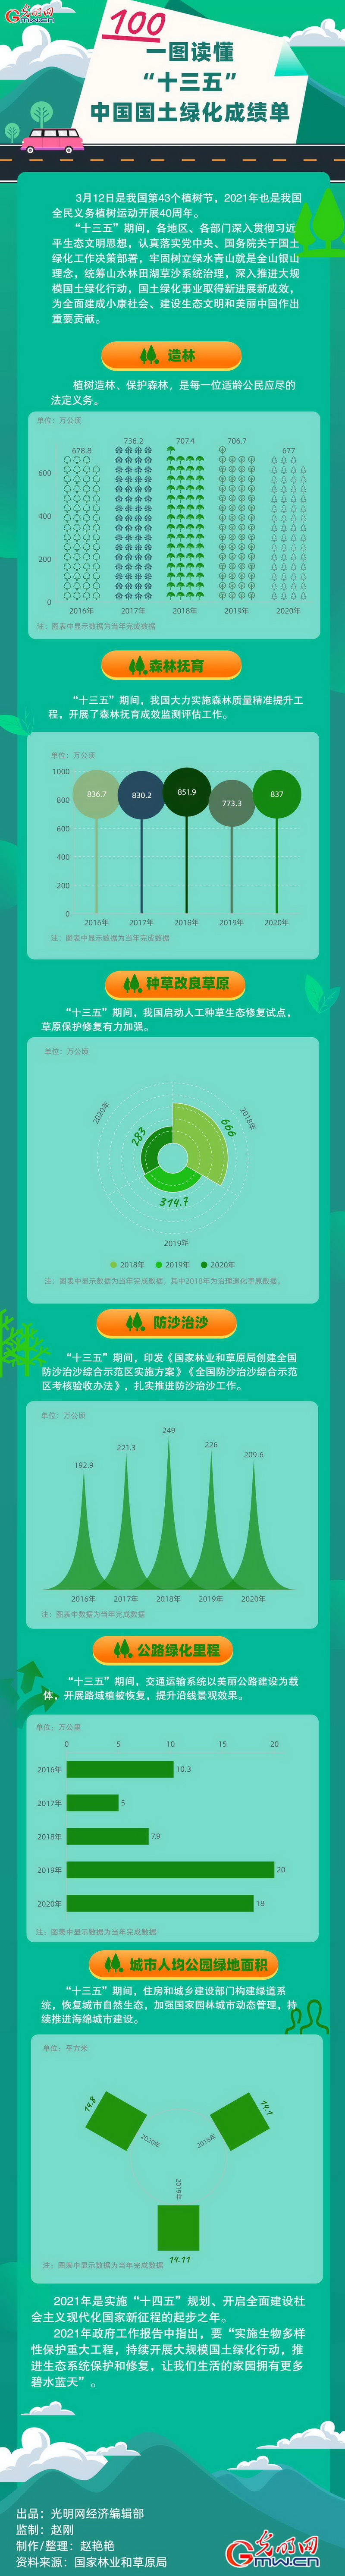 数据图解丨一图读懂“十三五”中国国土绿化成绩单